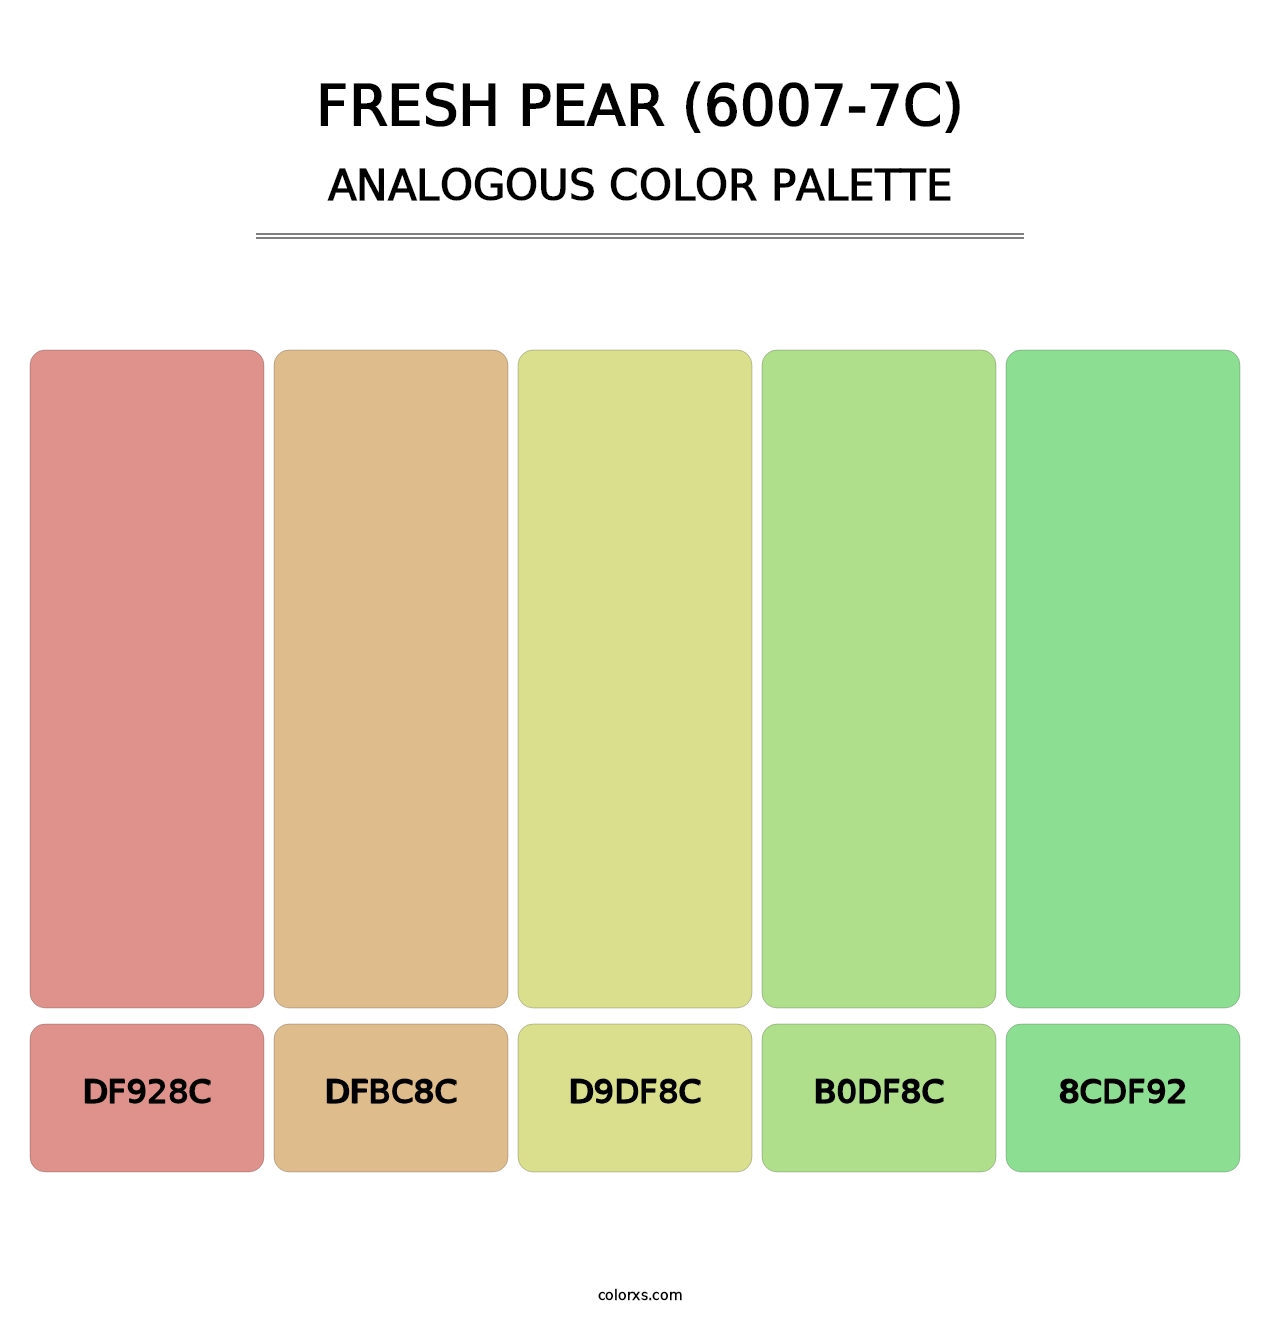 Fresh Pear (6007-7C) - Analogous Color Palette